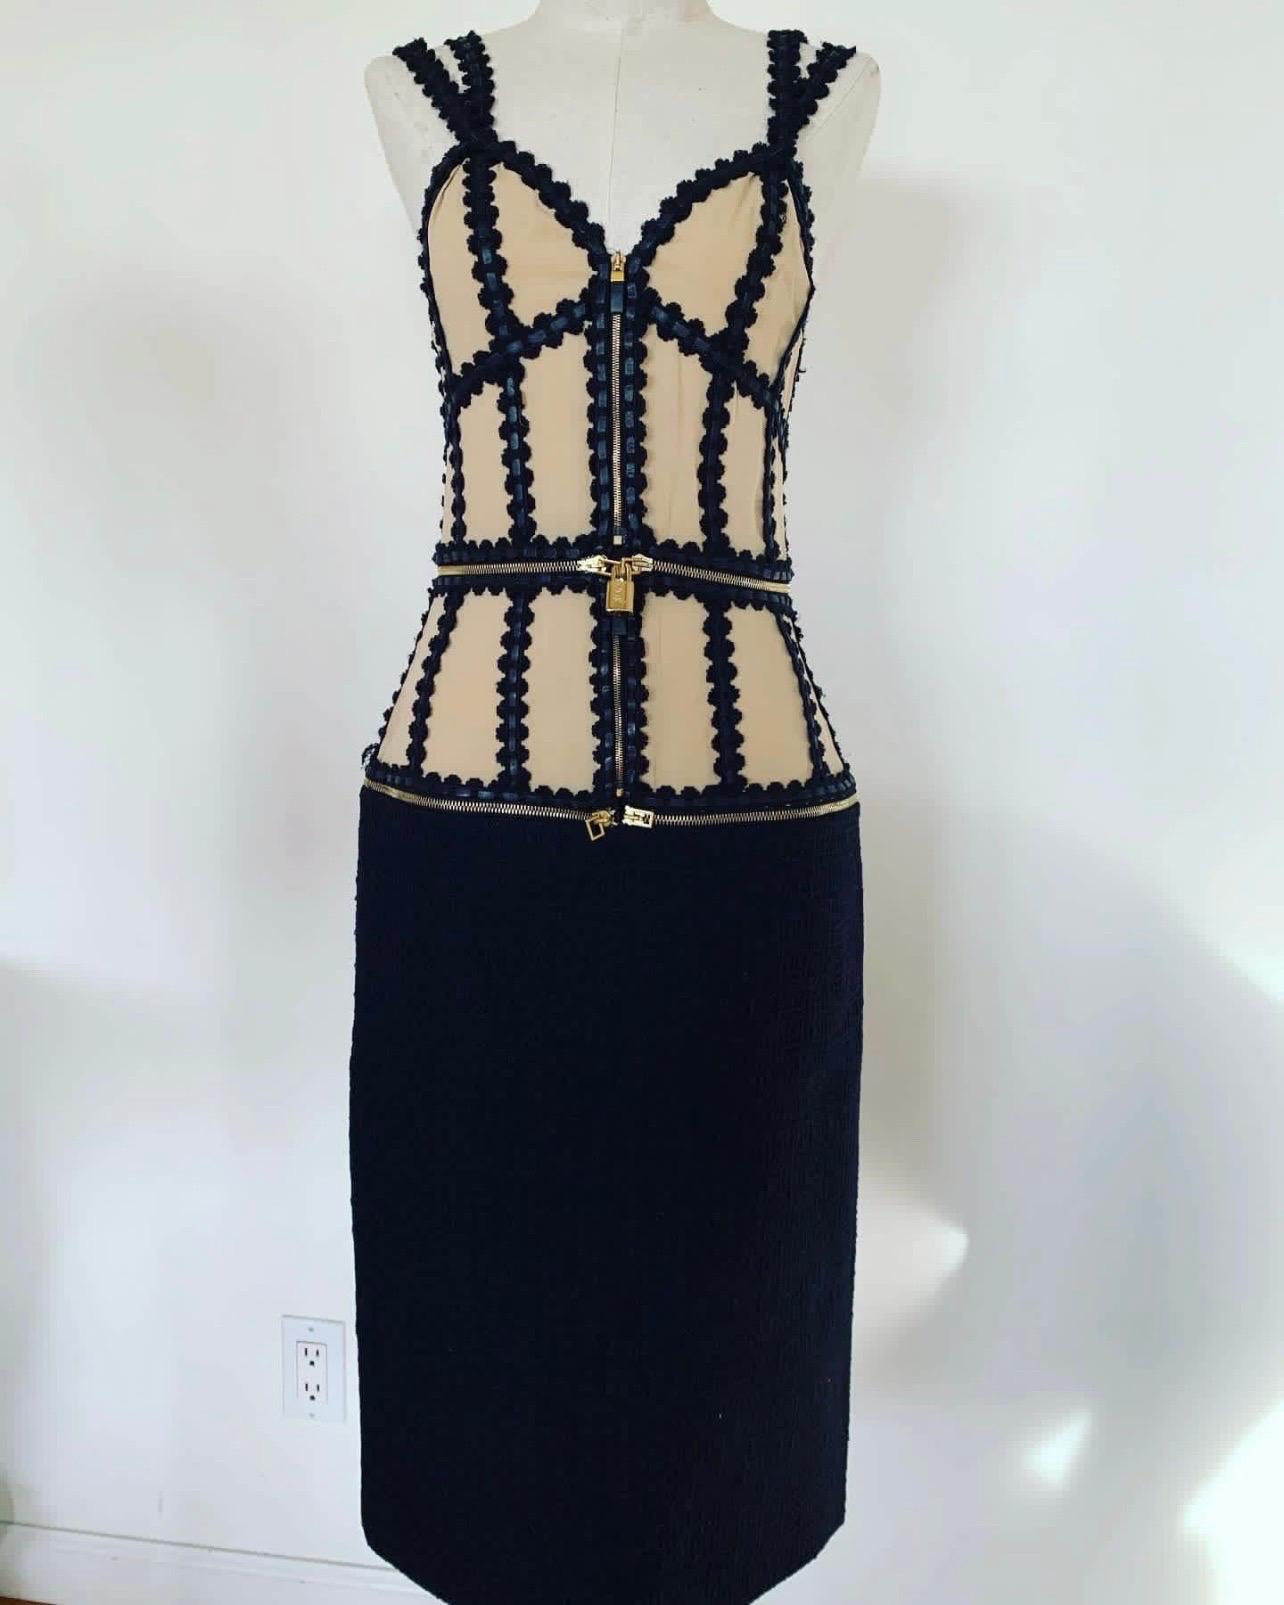 Vintage ALEXANDER MCQUEEN Transformer Kleid. Dieses seltene und atemberaubende Kleid aus den frühen 2000er Jahren lässt sich von einem Etuikleid in ein Tank-Top oder ein Korsett-Top verwandeln. 

Lederbesatz, Seide und Wolle ergeben eine